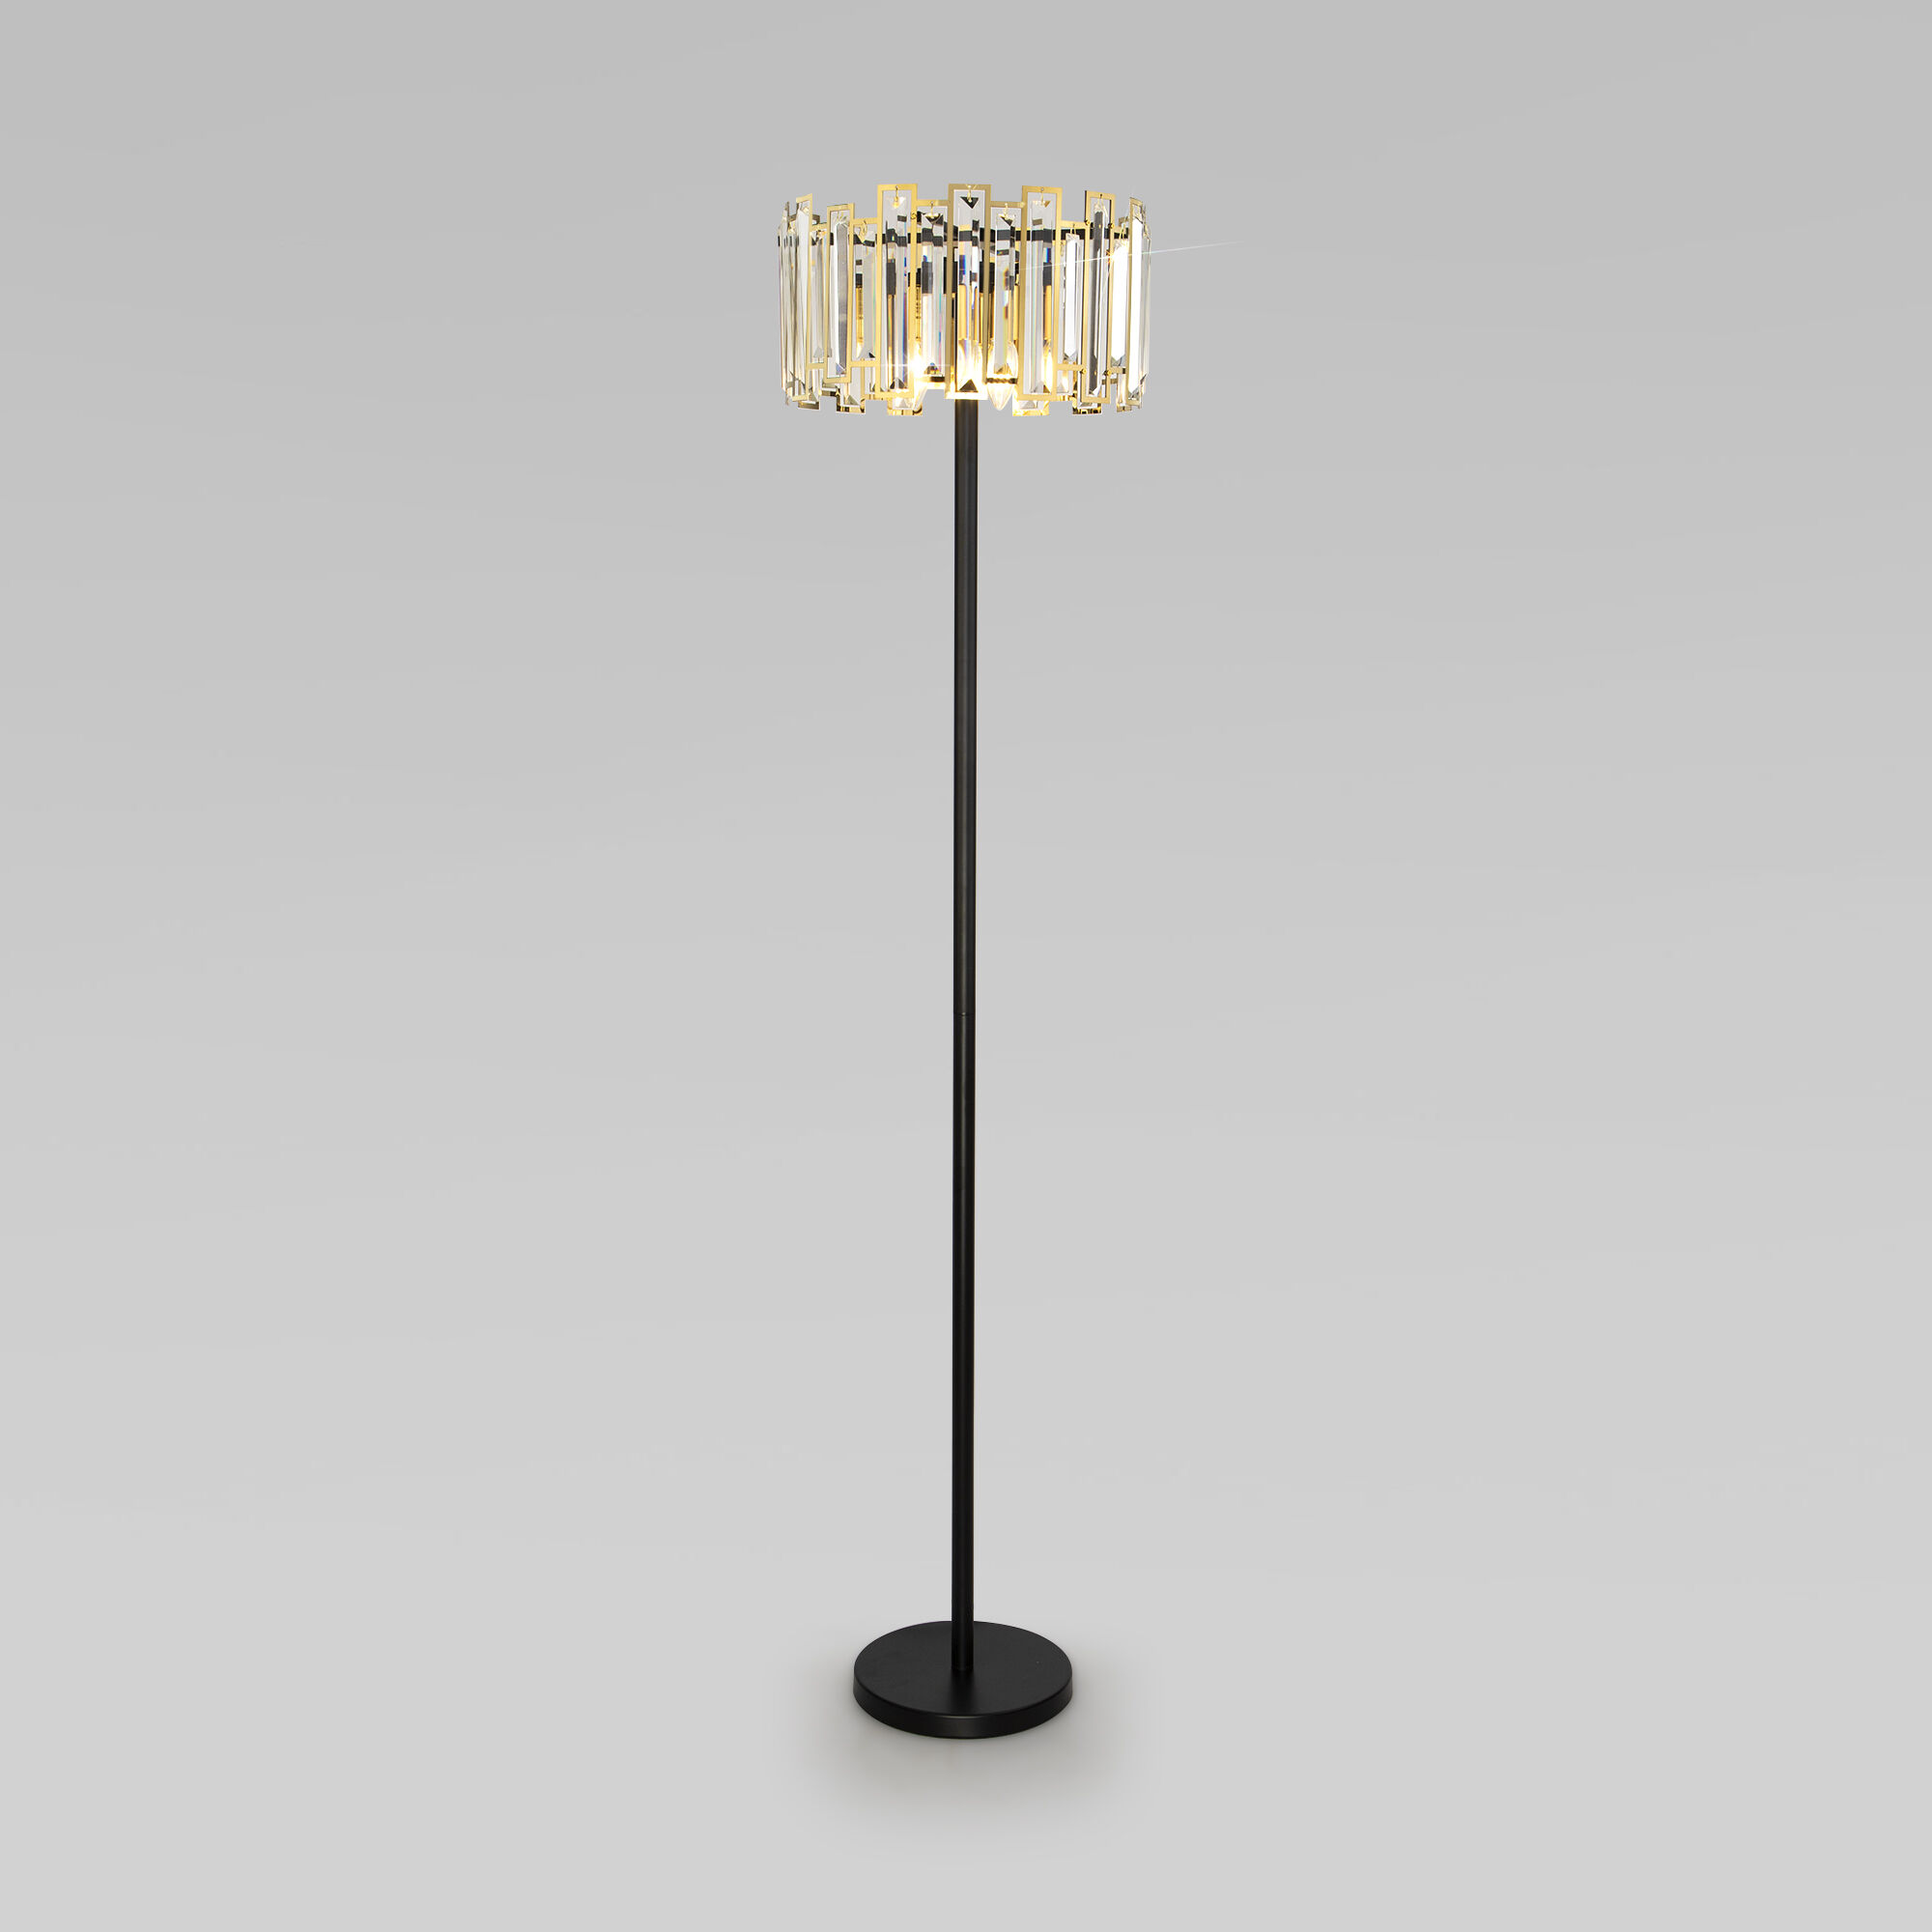 Напольный светильник с хруталем Bogate's Cella 01150/3 черный/золото. Фото 1